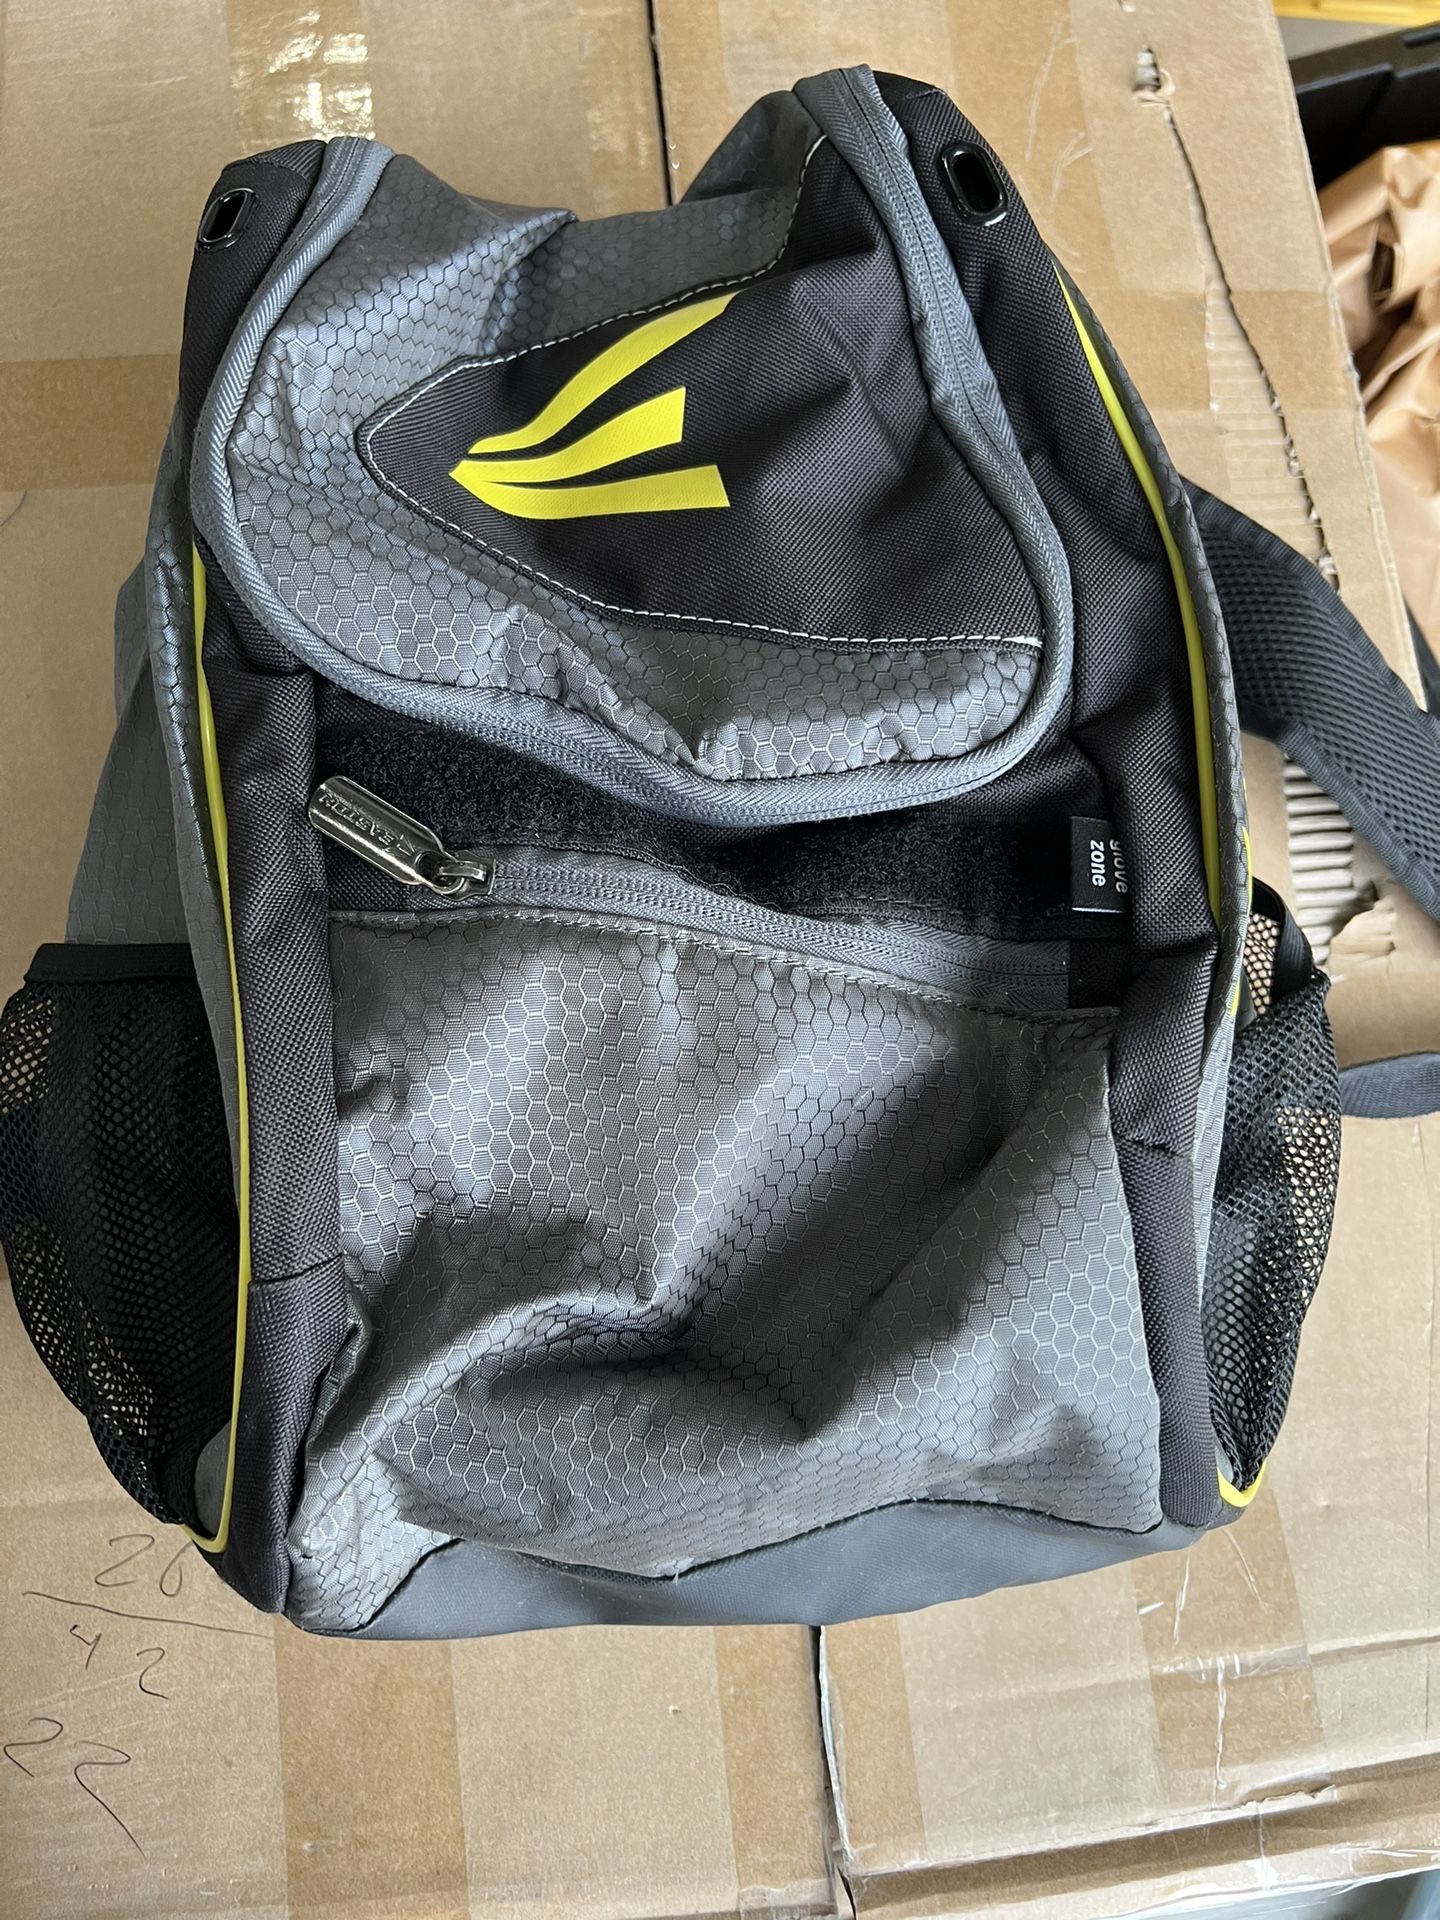 Easton backpack bat bag